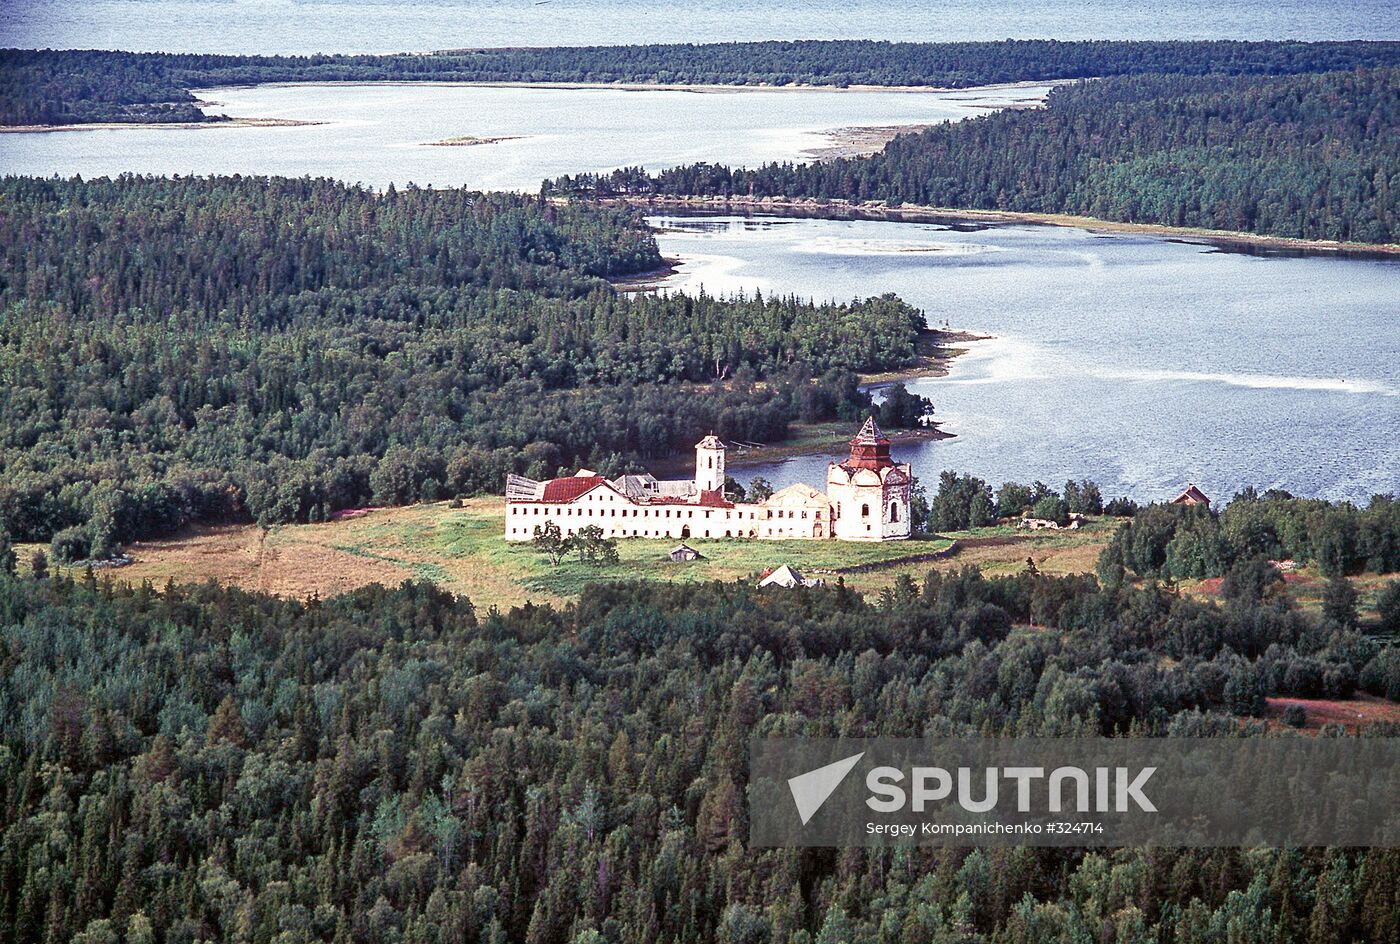 Solovetsky archipelago in Arkhangelsk Region